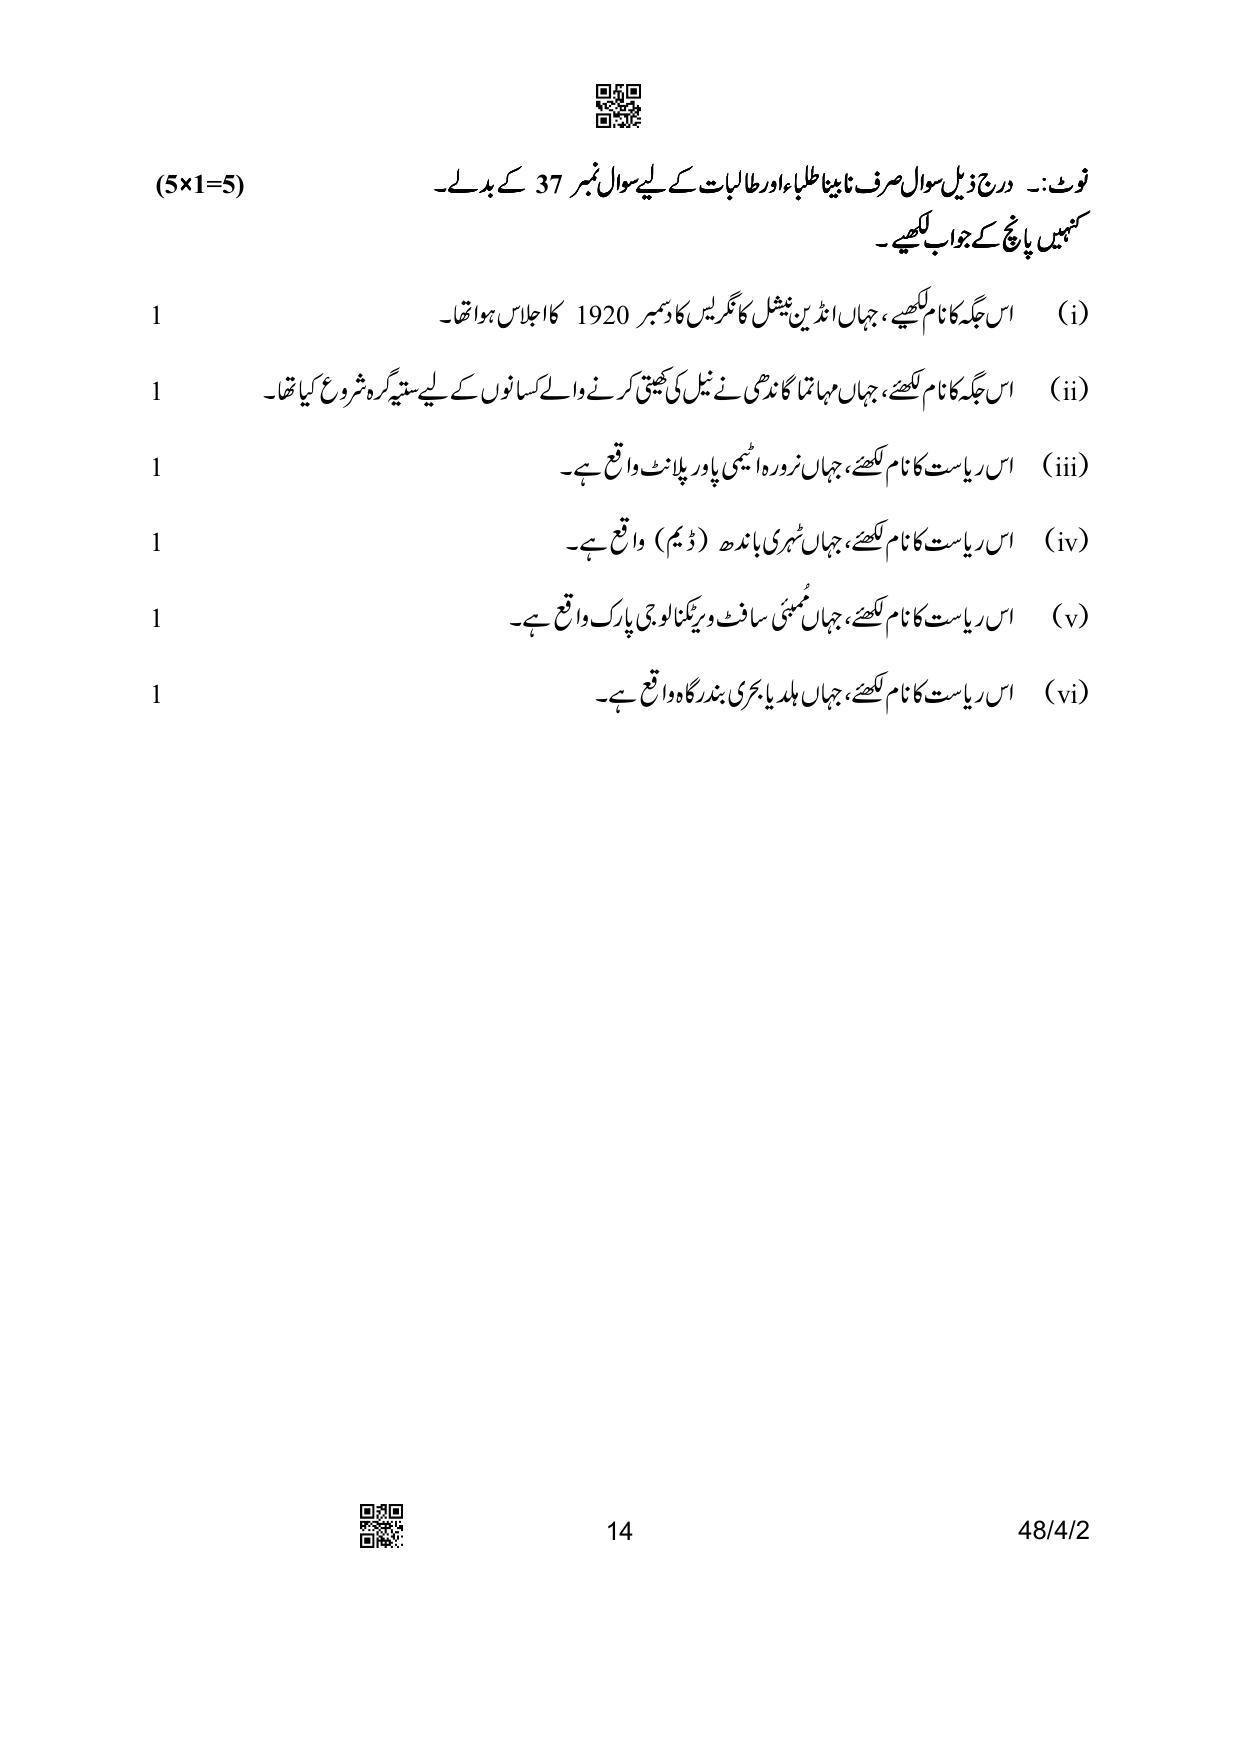 CBSE Class 10 48-4-2 Social Science Urdu Version 2023 Question Paper - Page 14